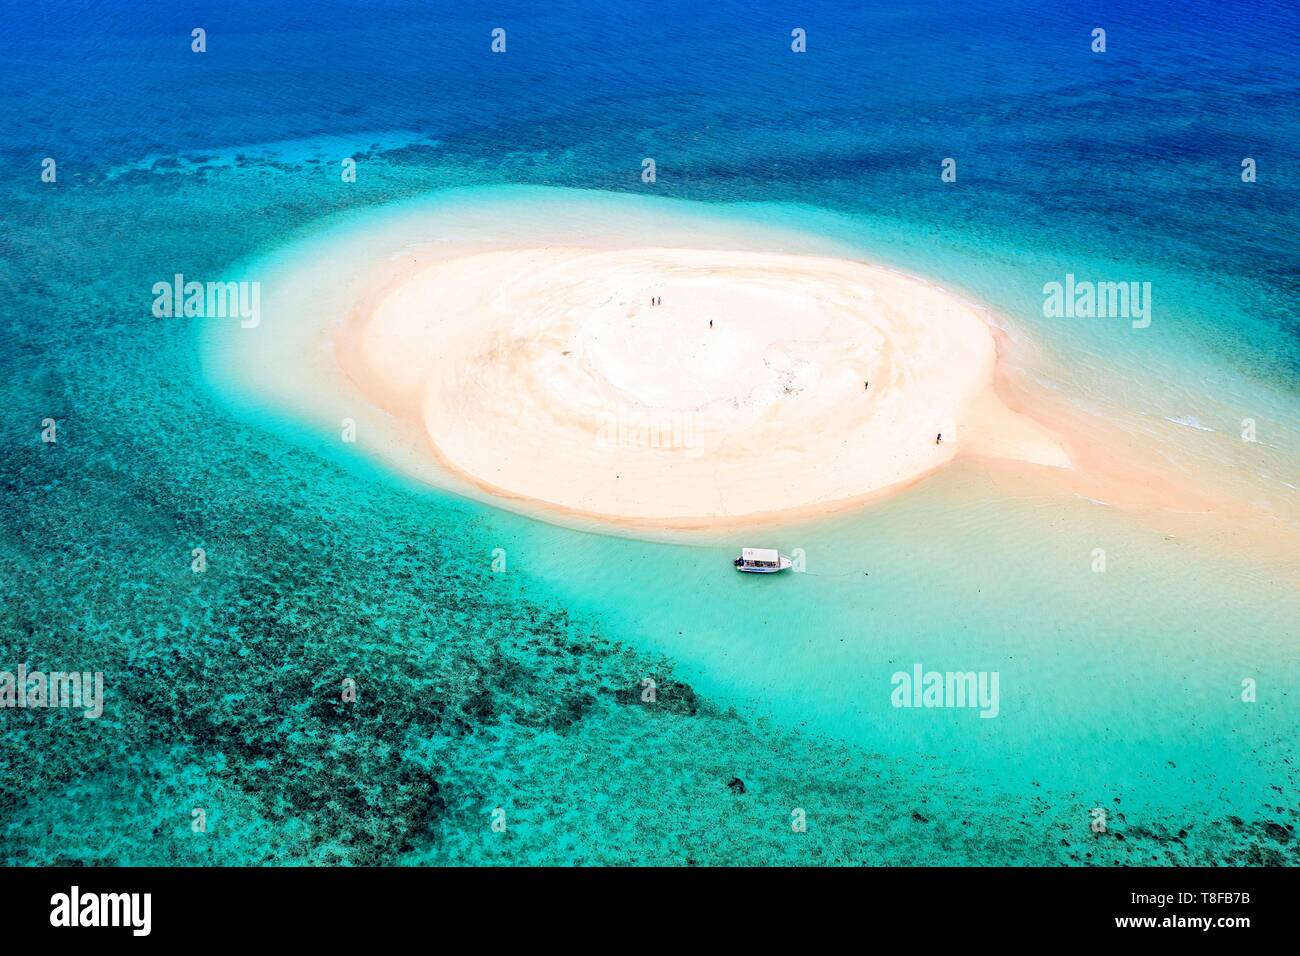 Francia, isola di Mayotte (dipartimento francese d' oltremare), Grande Terre, M'Tsamoudou, isolotto di sabbia bianca sulla barriera corallina in laguna affacciata Saziley (punto di vista aerea) Foto Stock